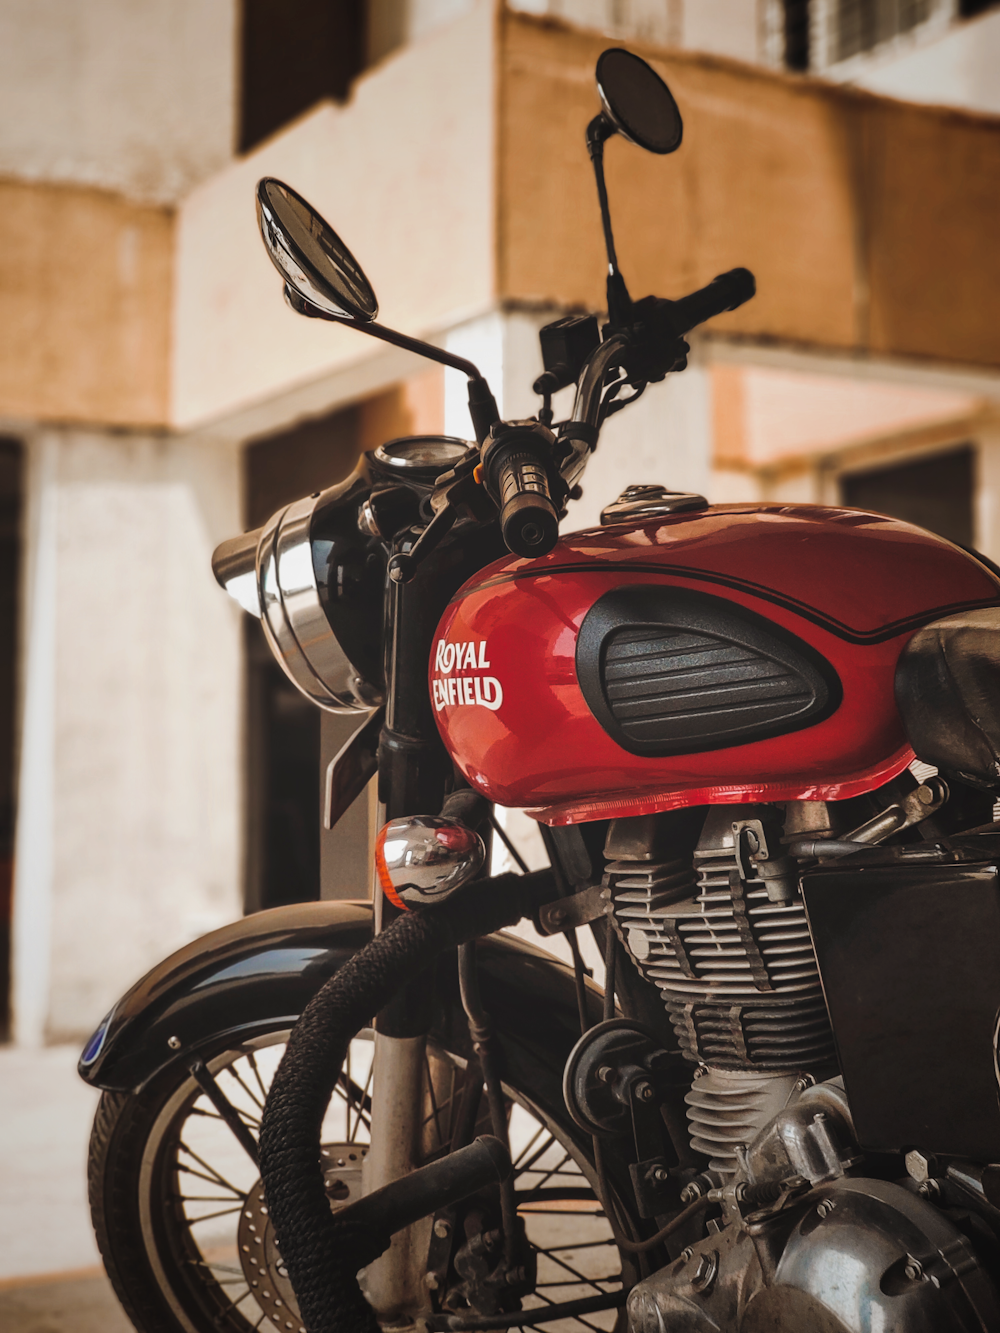 Moto rouge et noire en photographie rapprochée